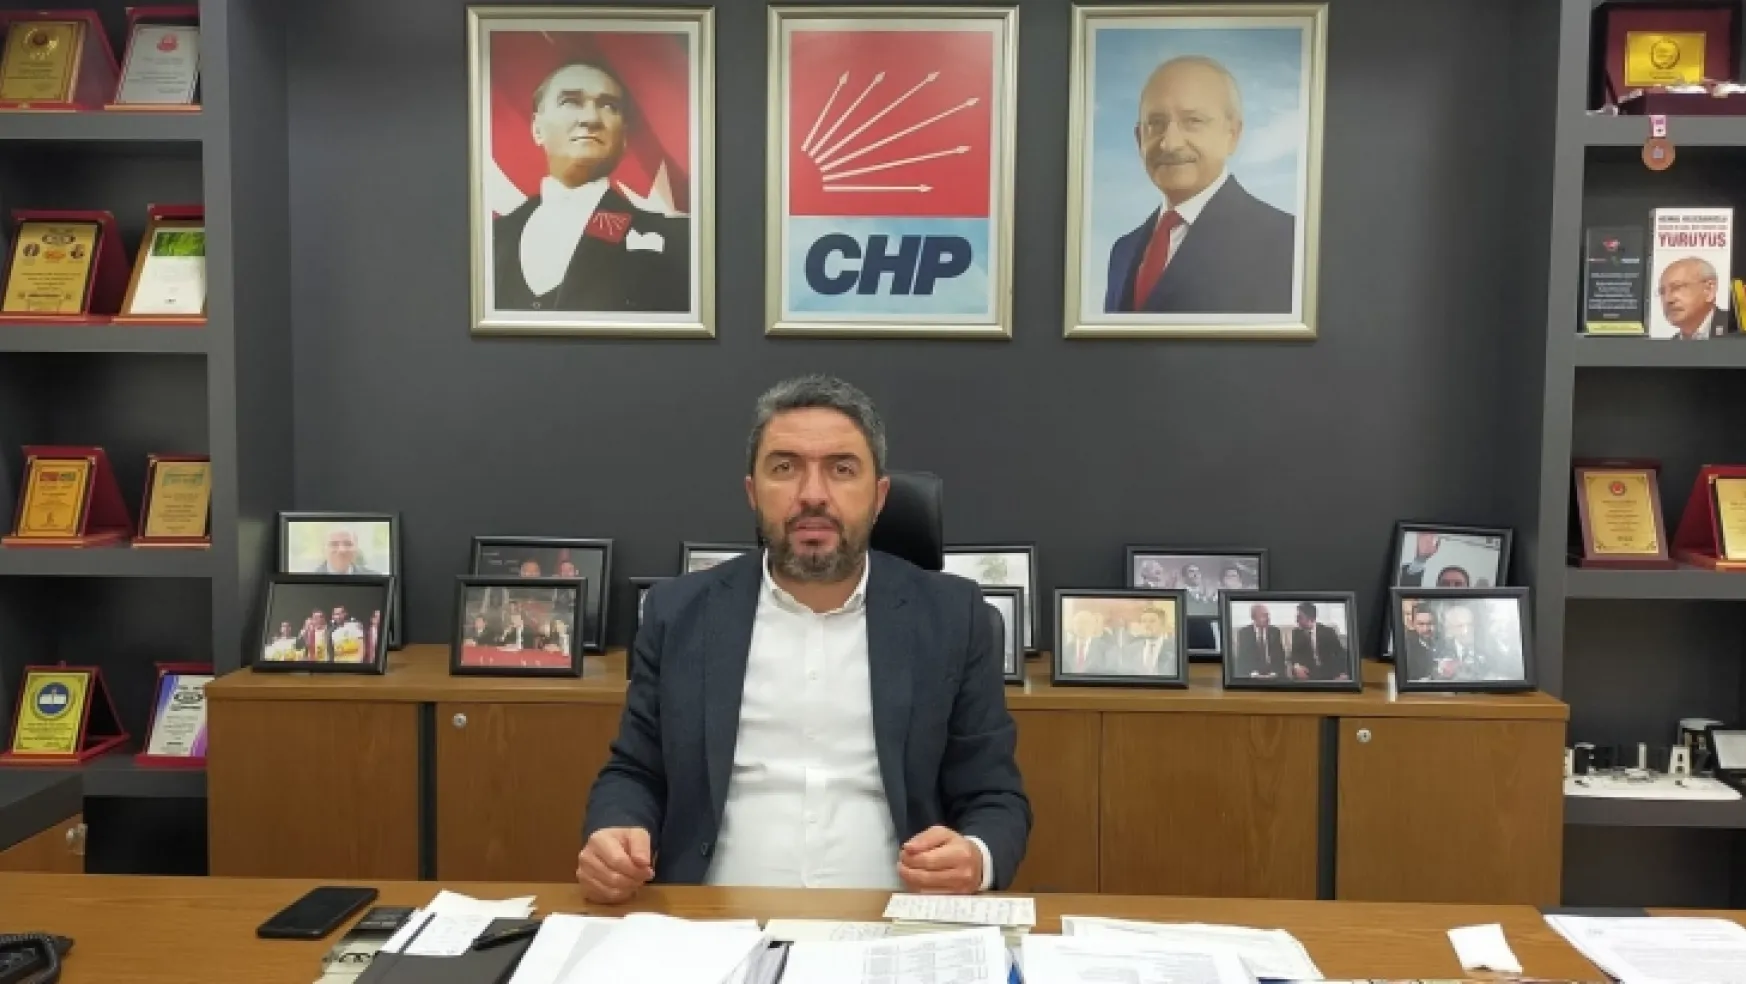 CHP Malatya İl Başkanı Enver Kiraz'ın 2020 yılı değerlendirmesi.